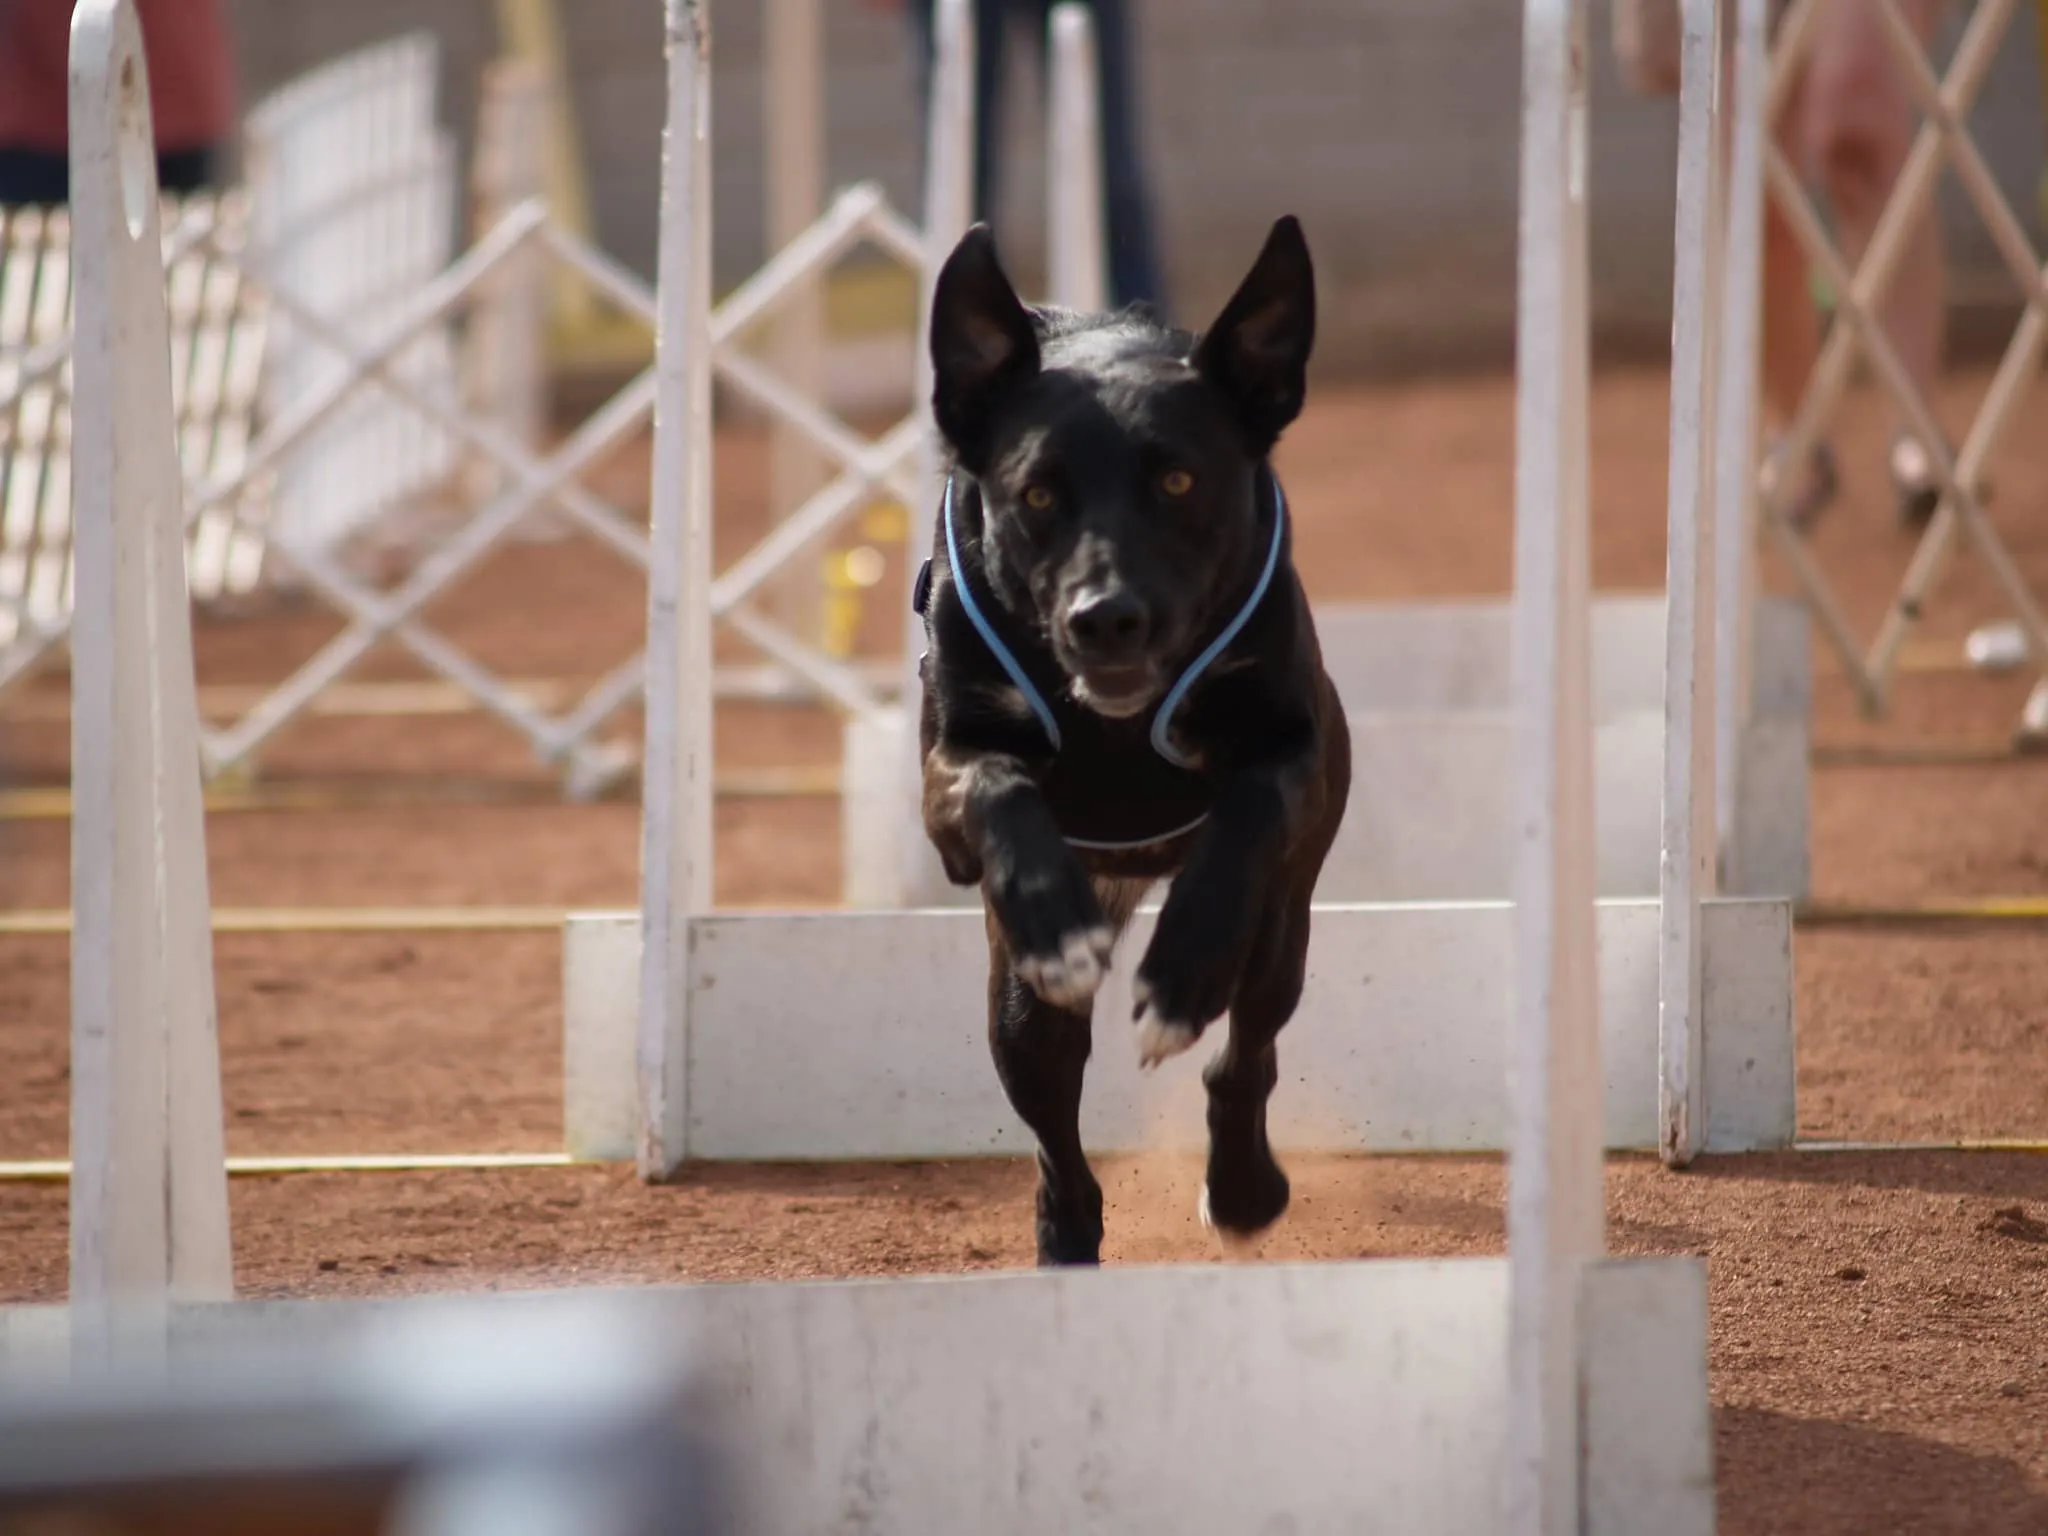 En svart hund hoppar över ett flyballhinder